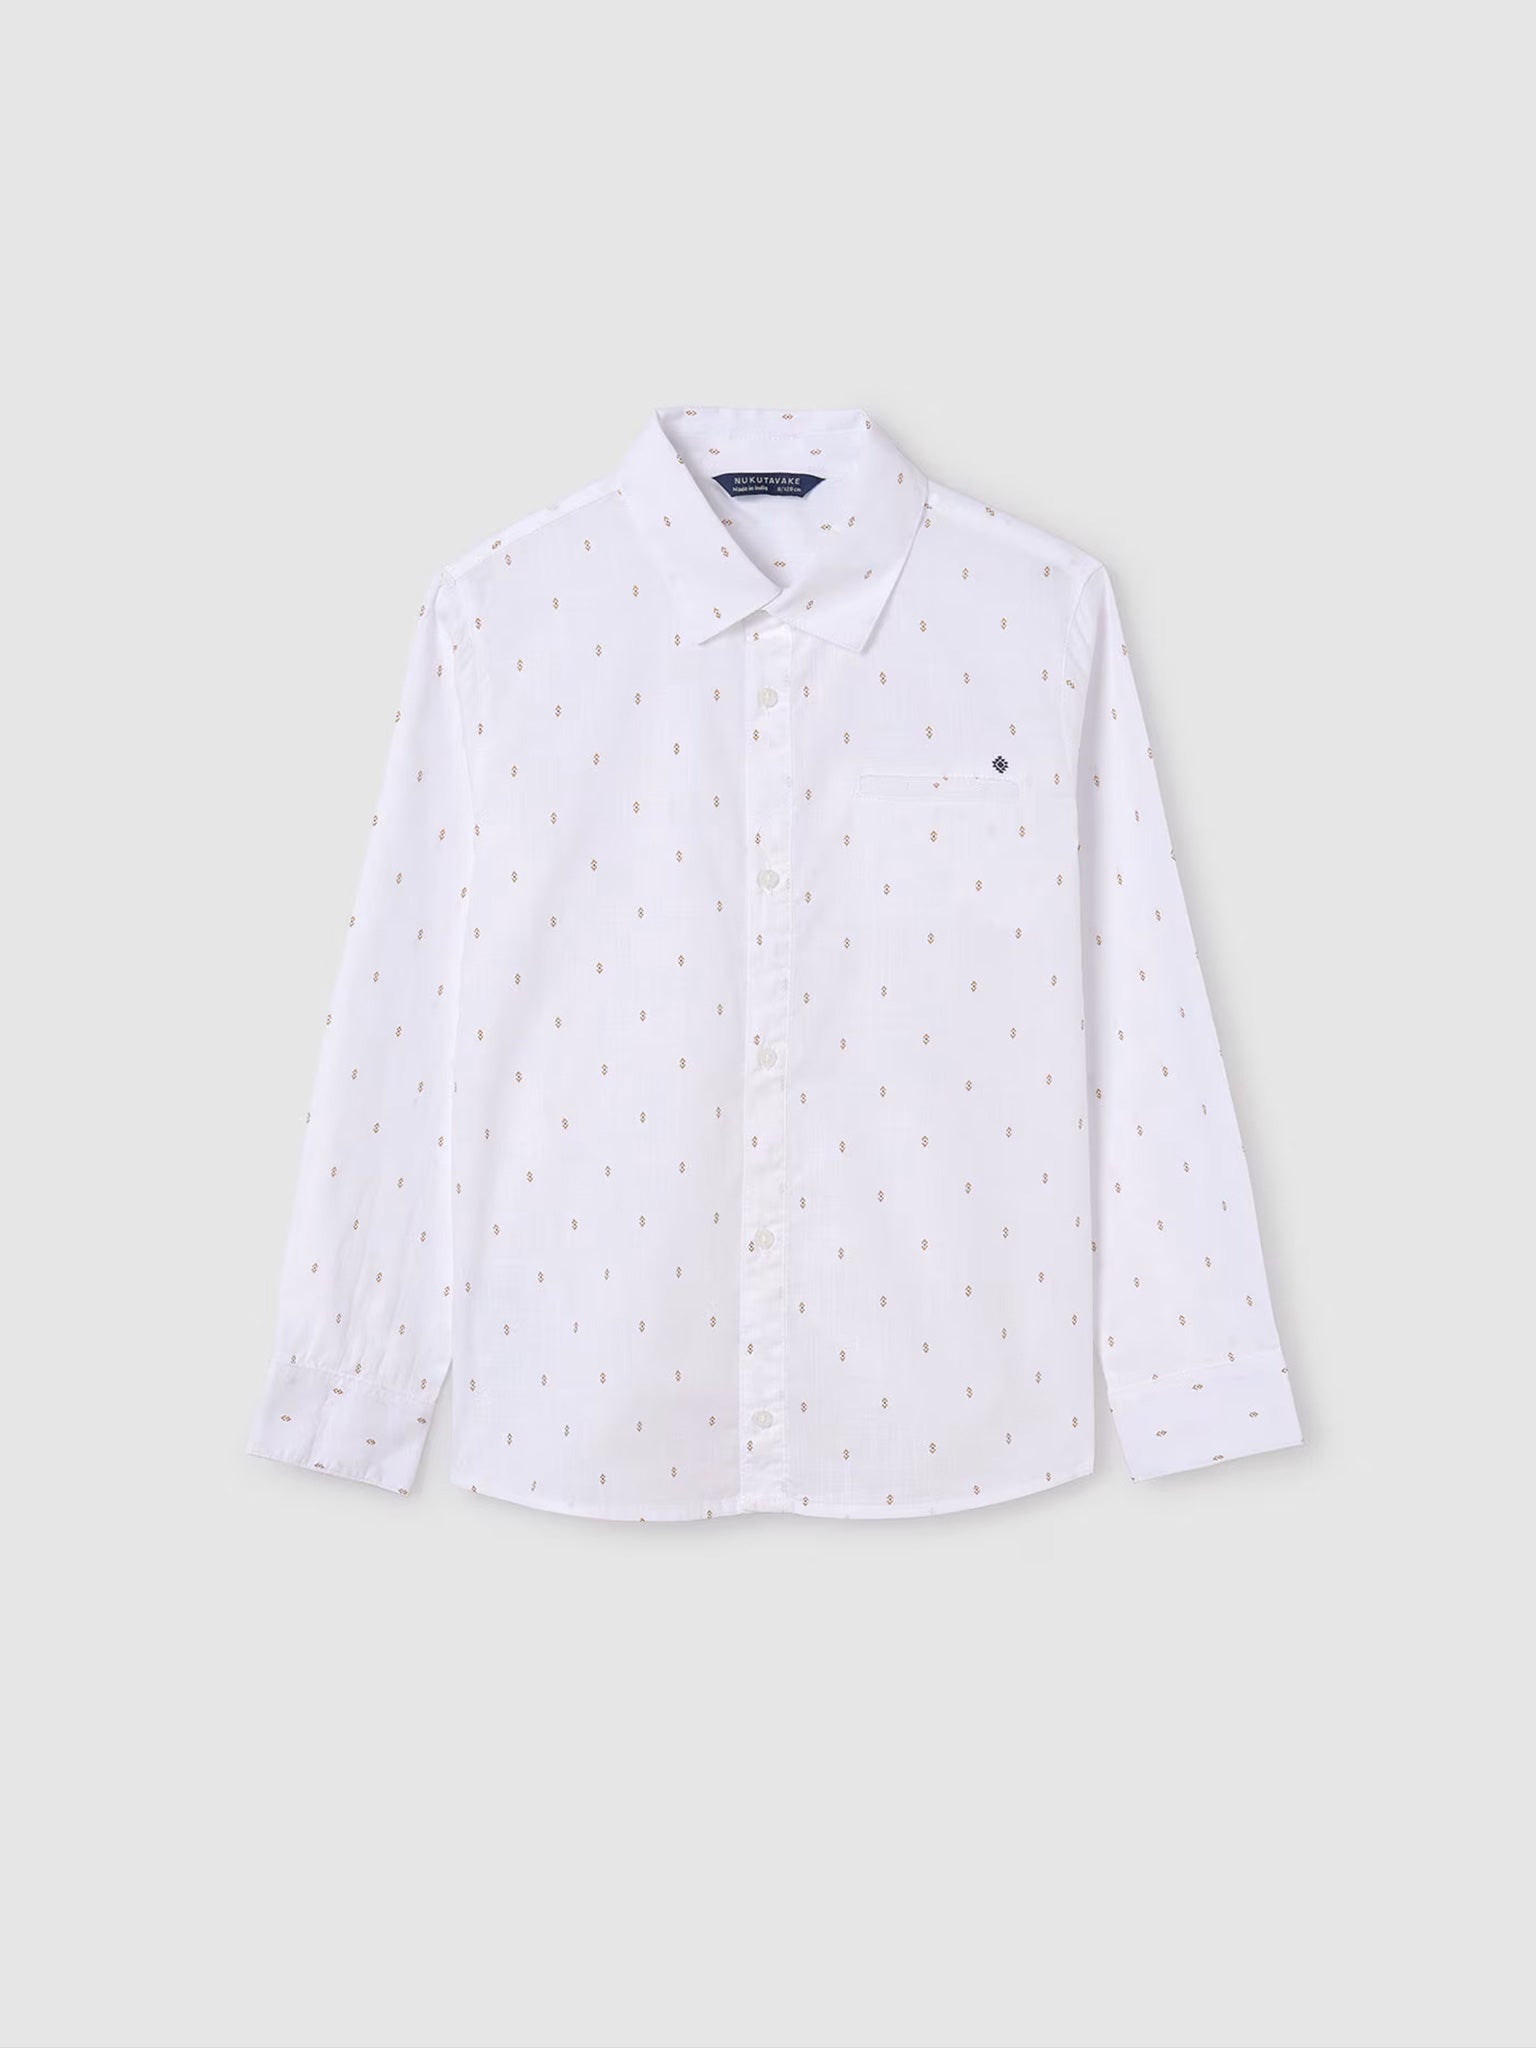 Εφηβικό πουκάμισο σταμπωτό Better Cotton 24-06123-032 | 24-06123-032